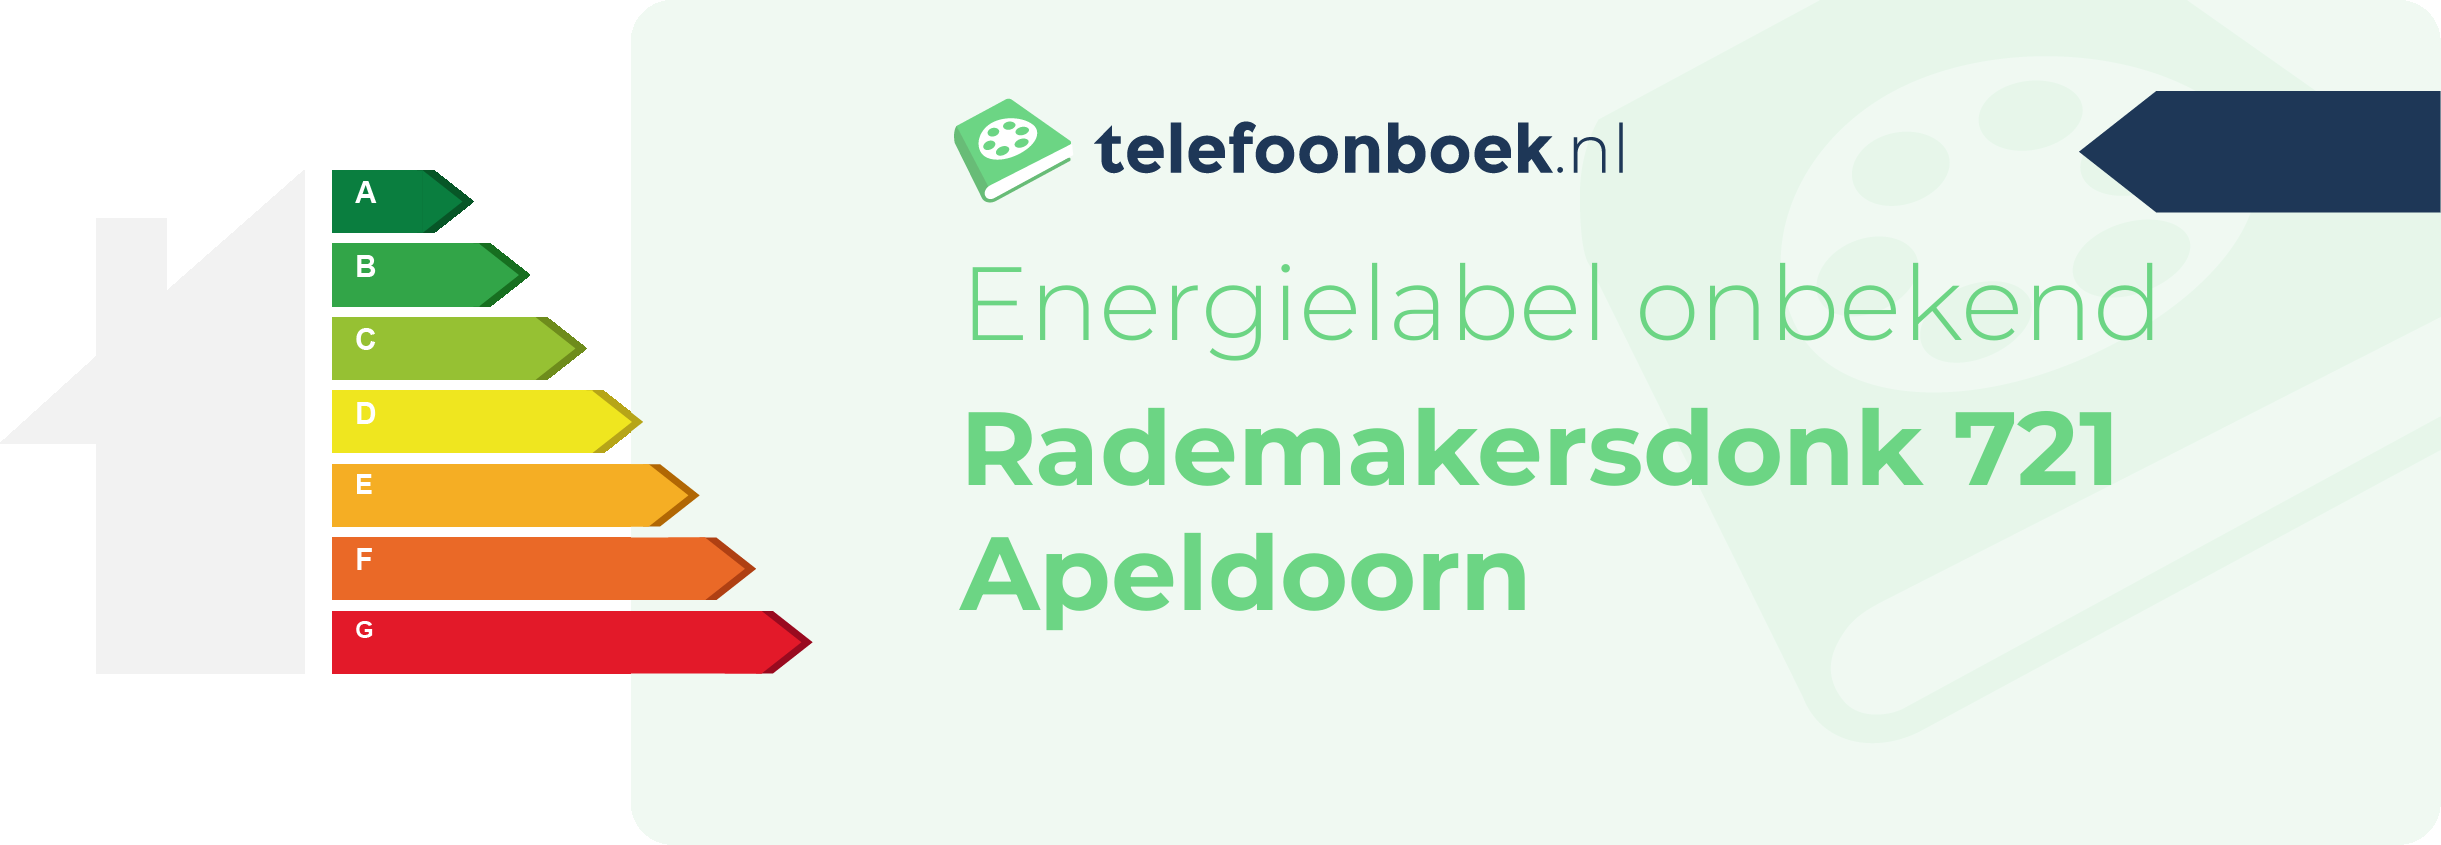 Energielabel Rademakersdonk 721 Apeldoorn